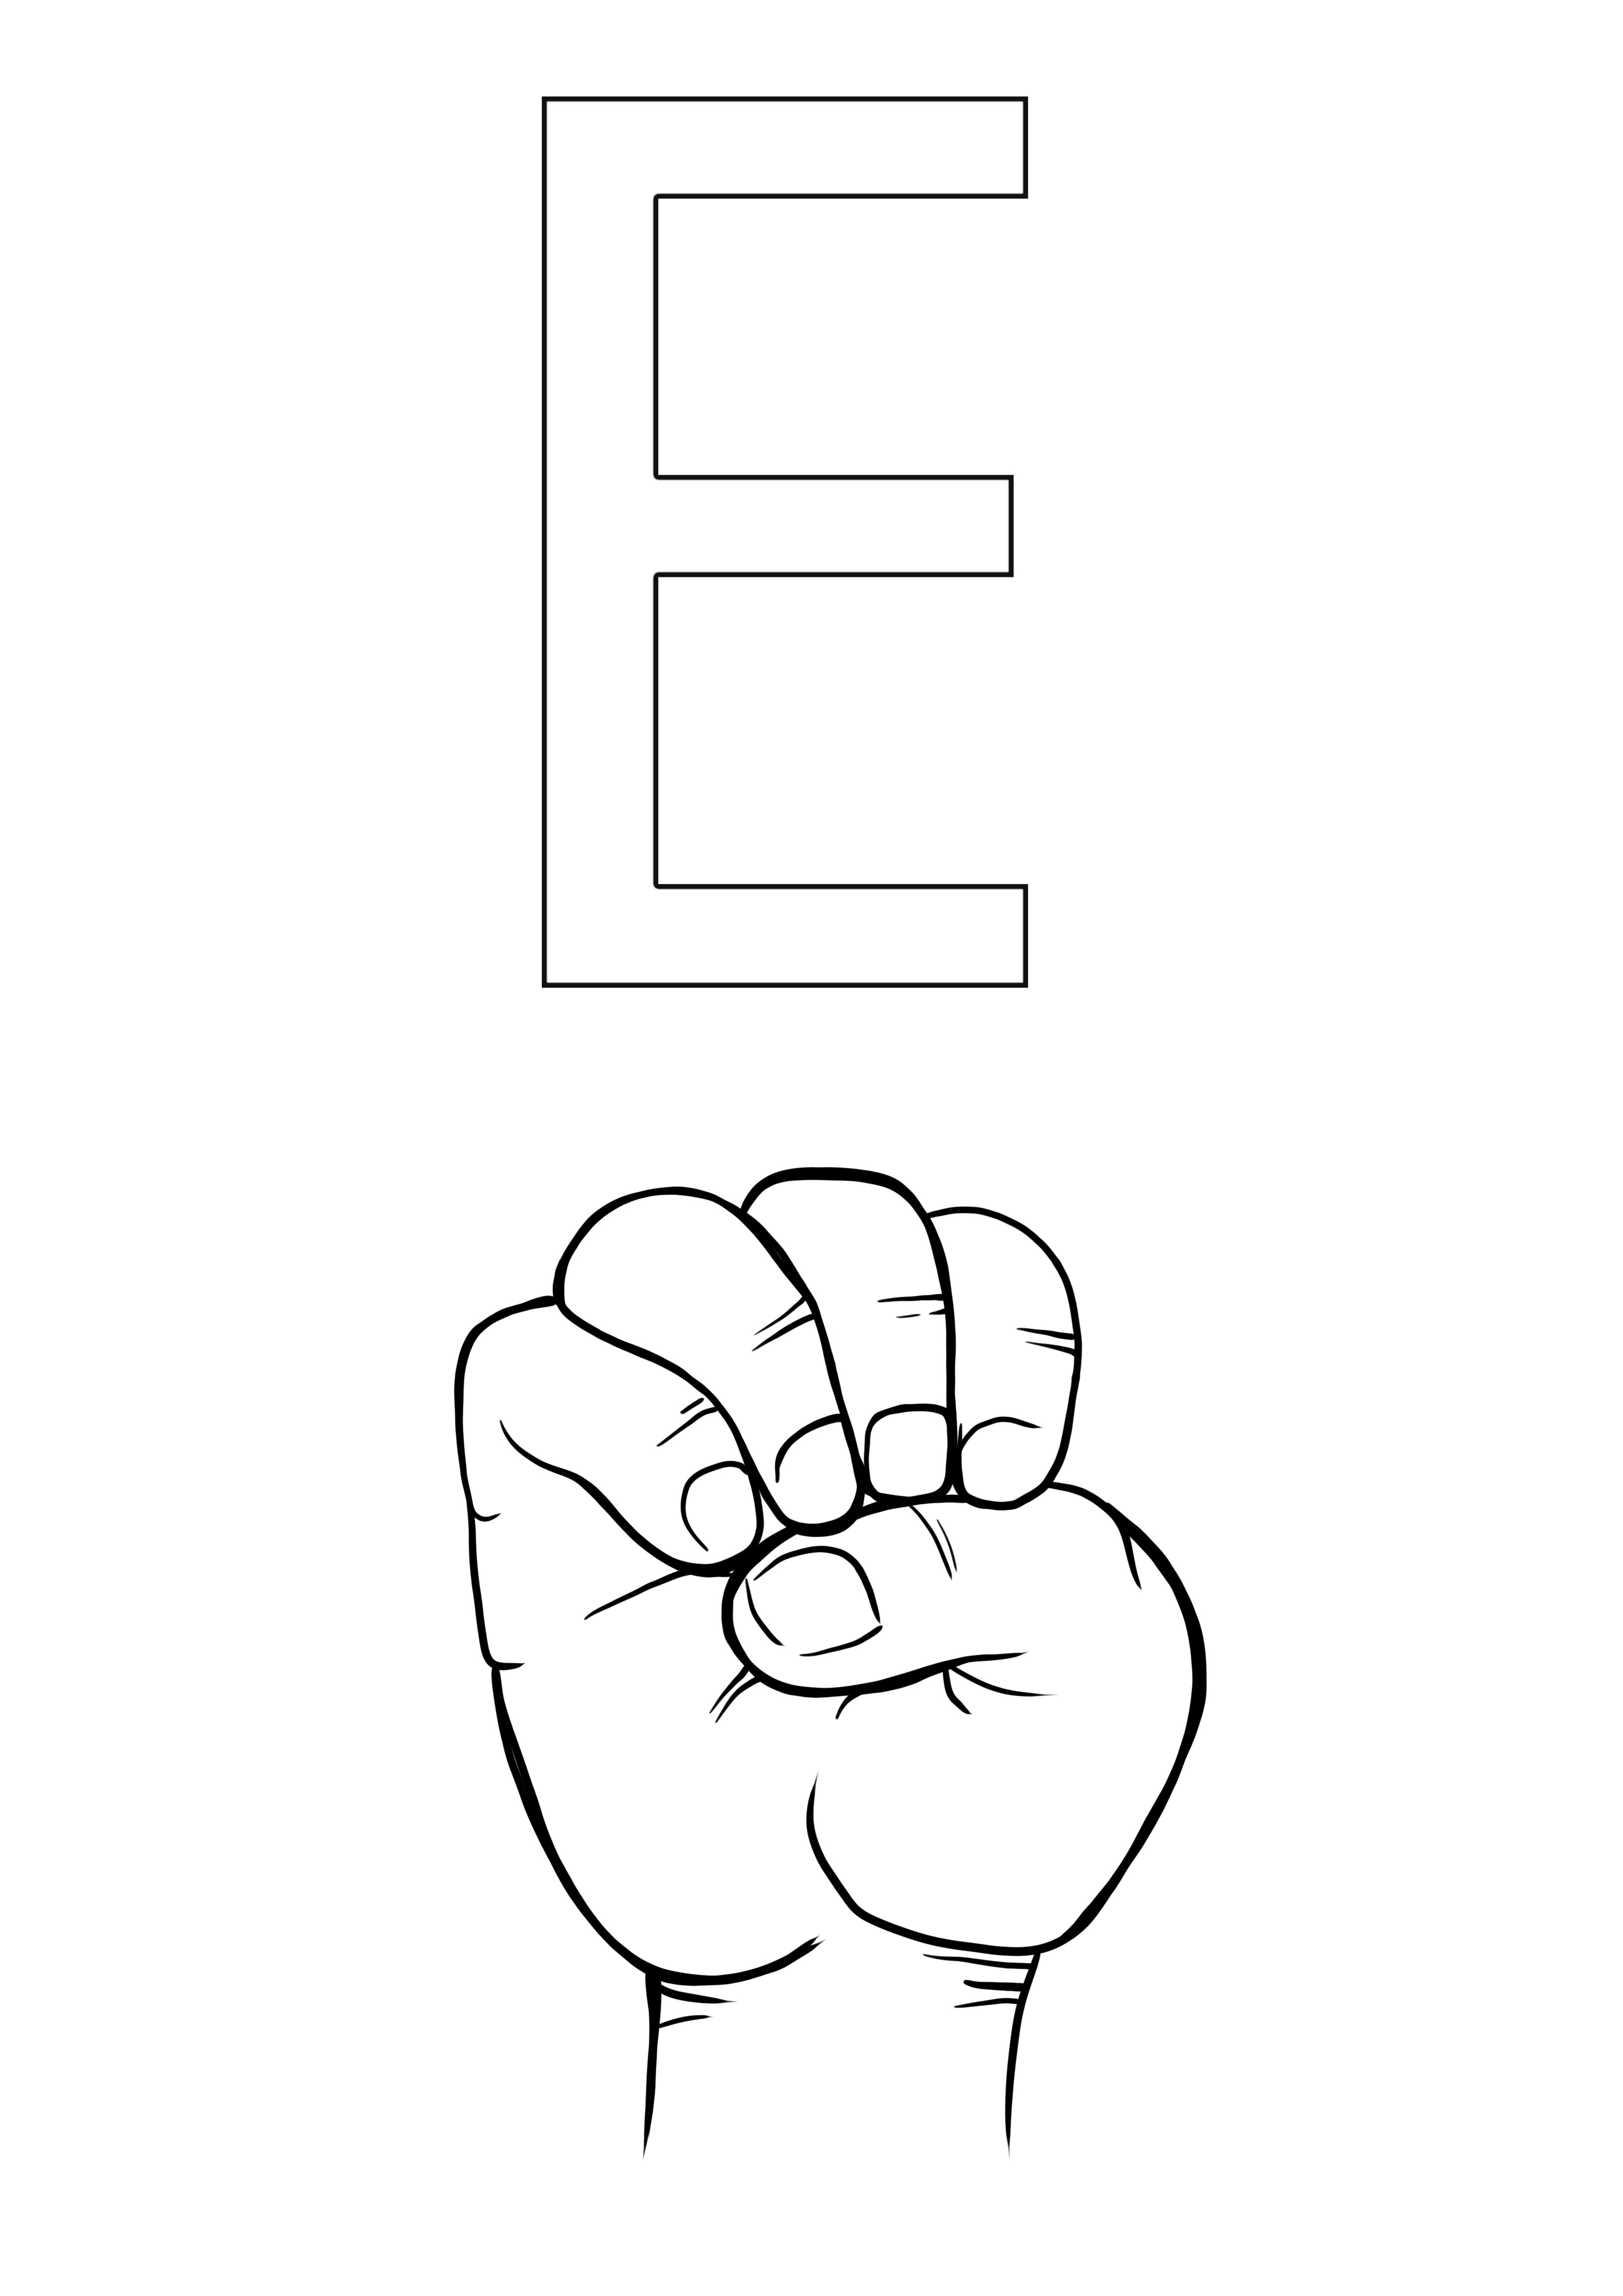 ASL litera E kolorowanie i drukowanie za darmo